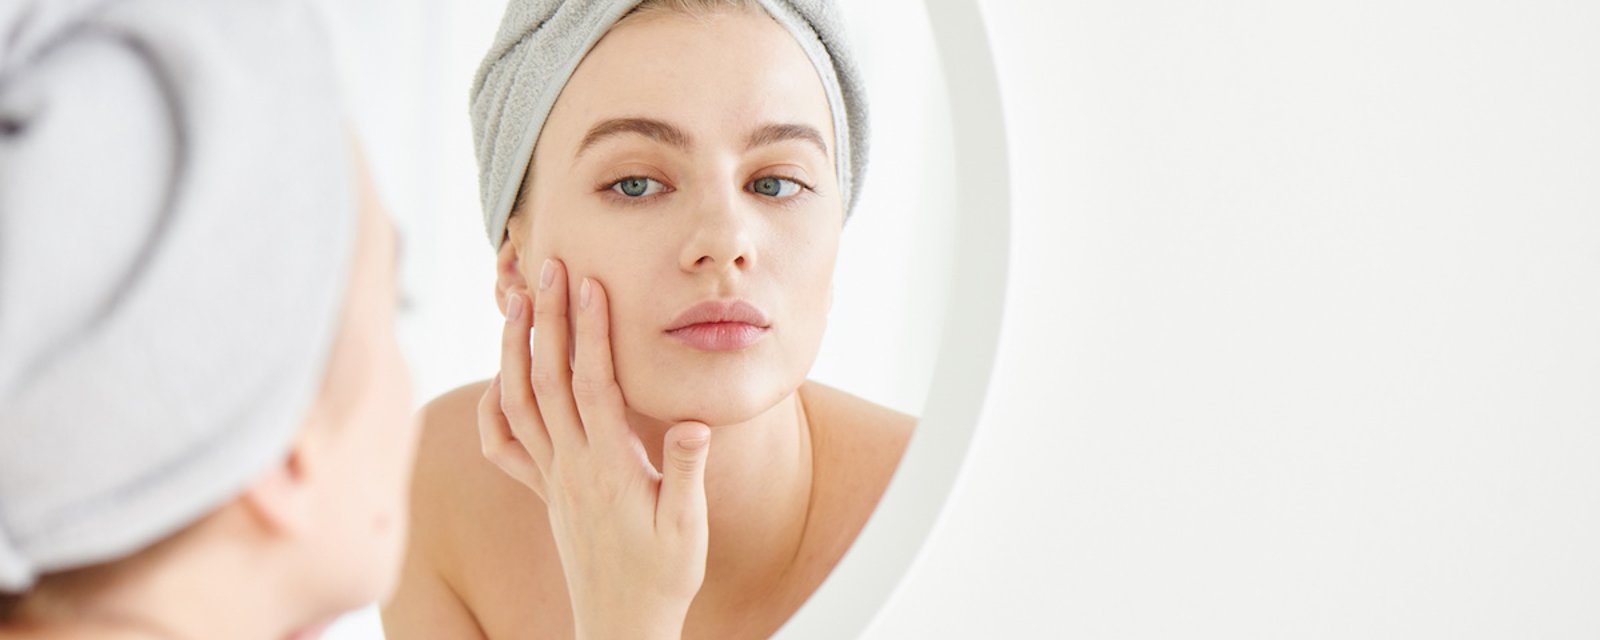 14 mythes au sujet du maquillage et des soins corporels 